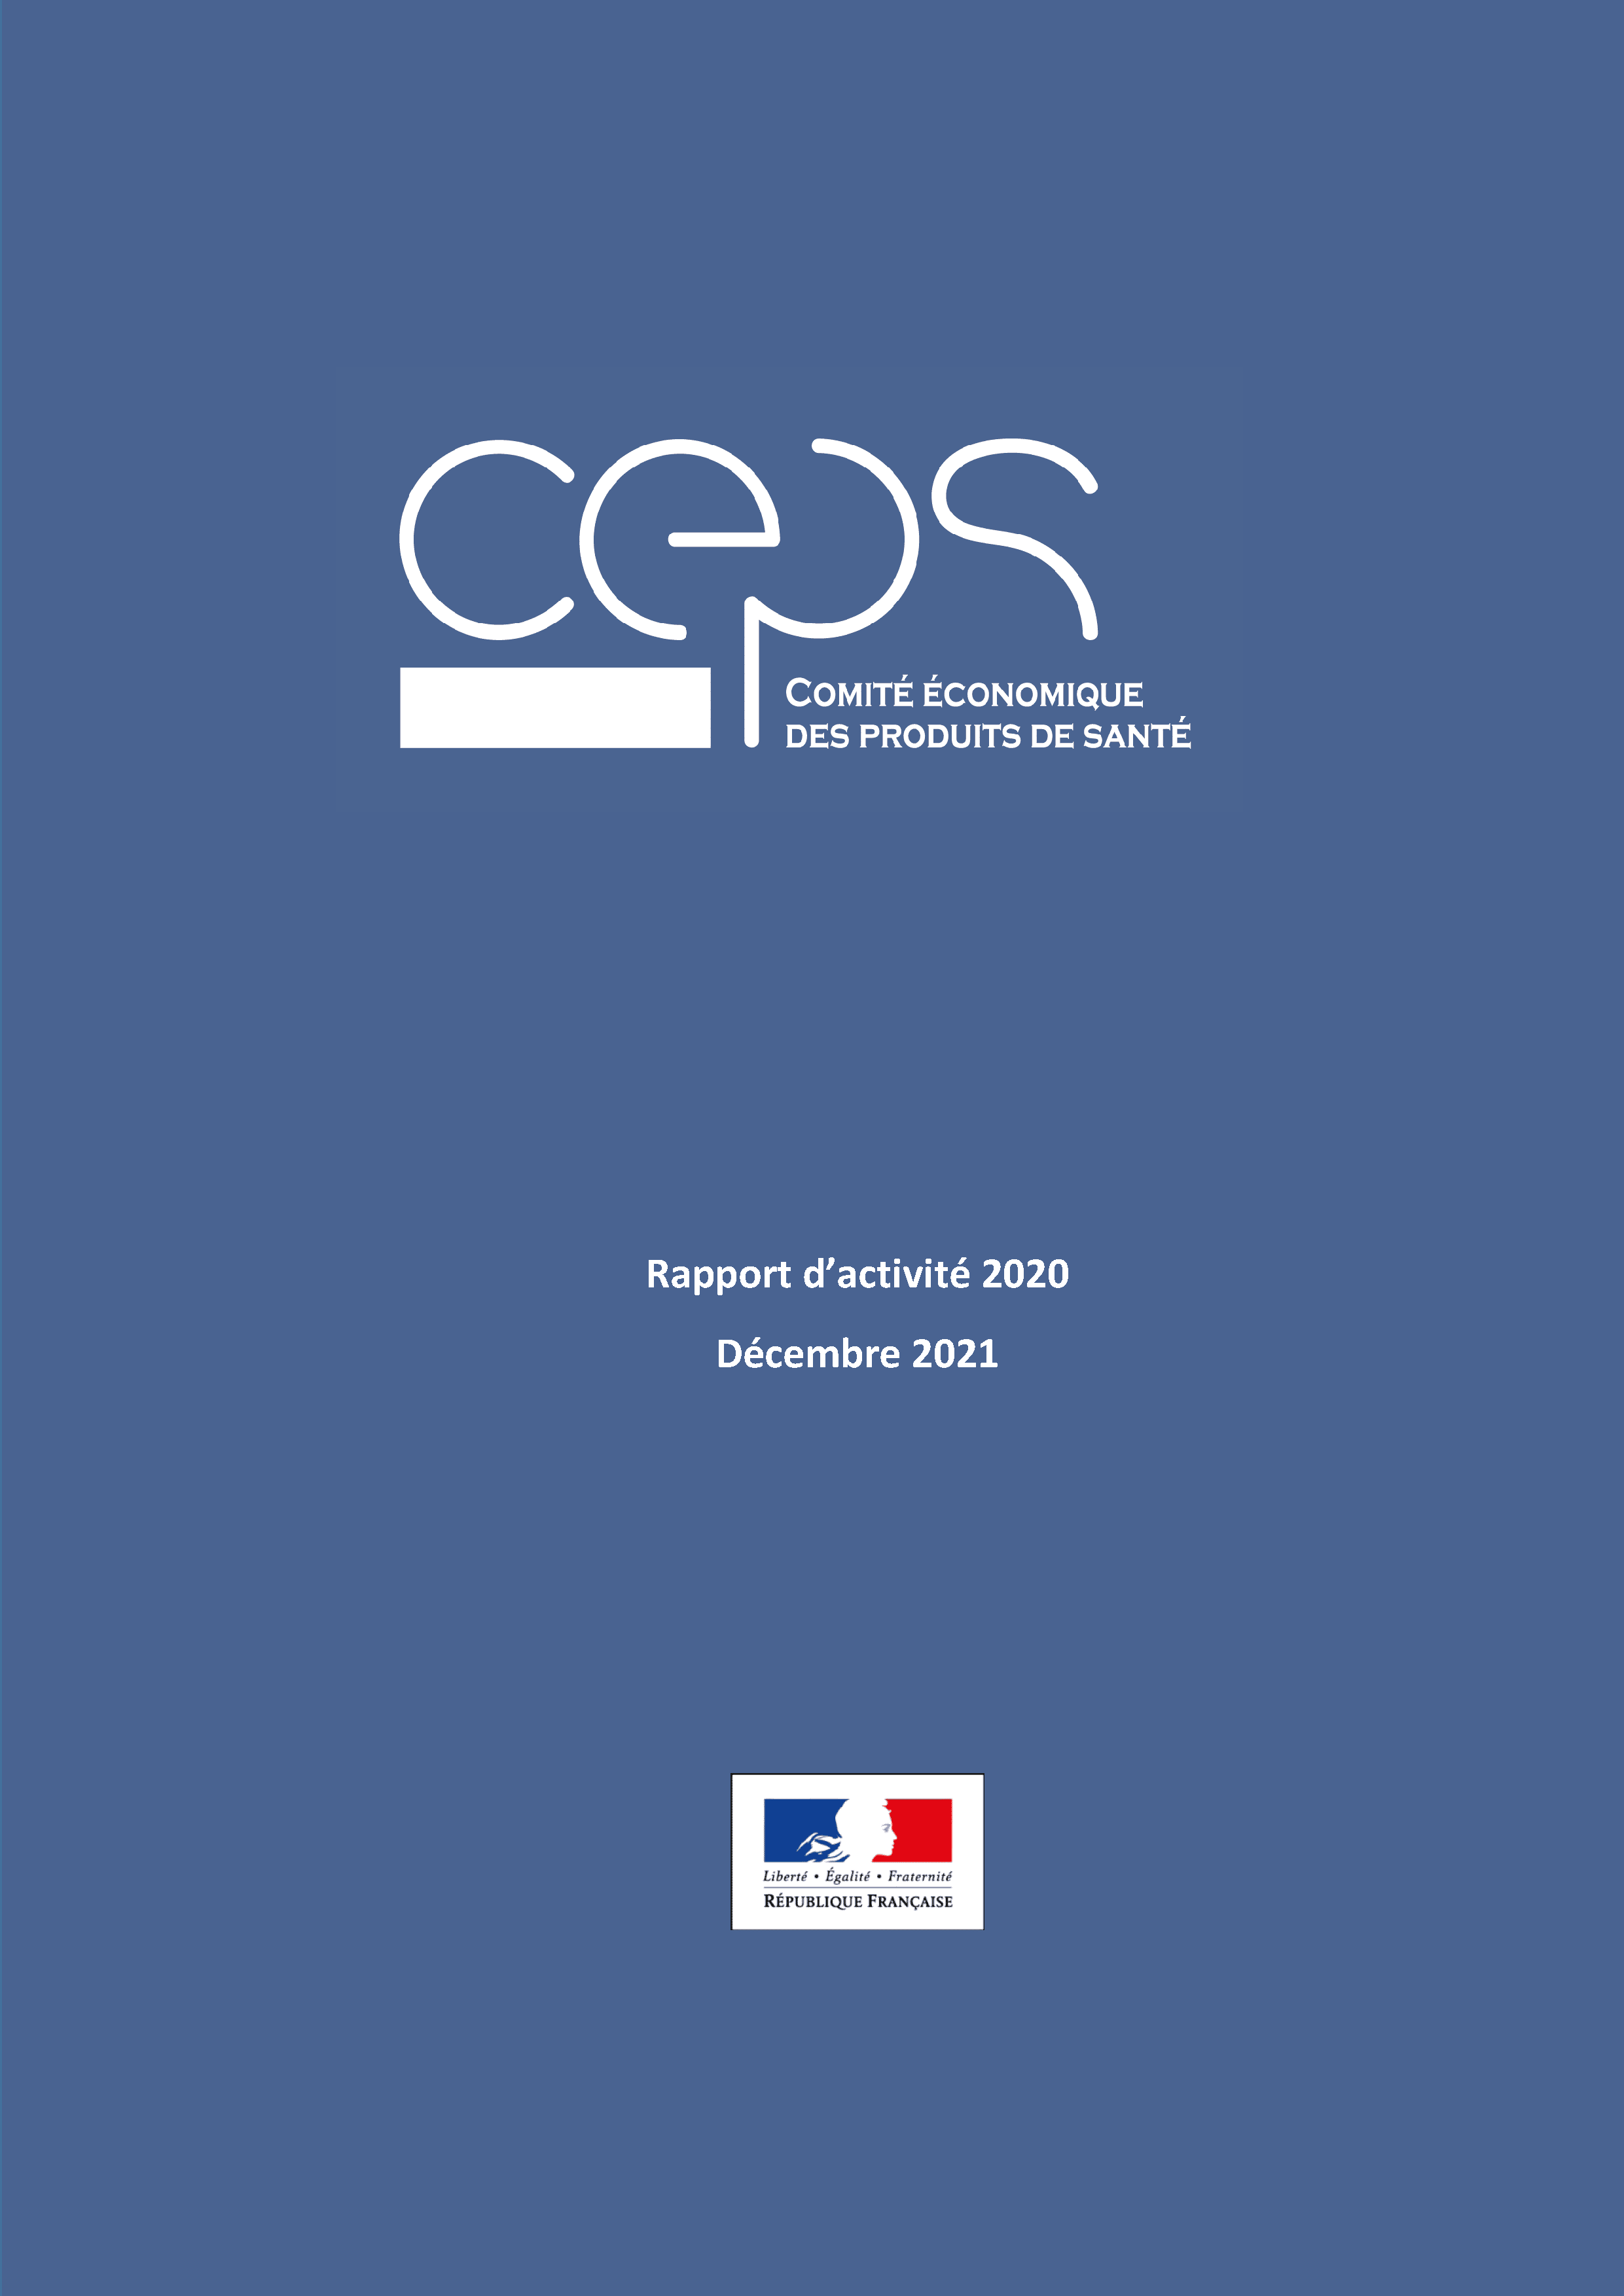 Rapport d’activité 2020 du CEPS